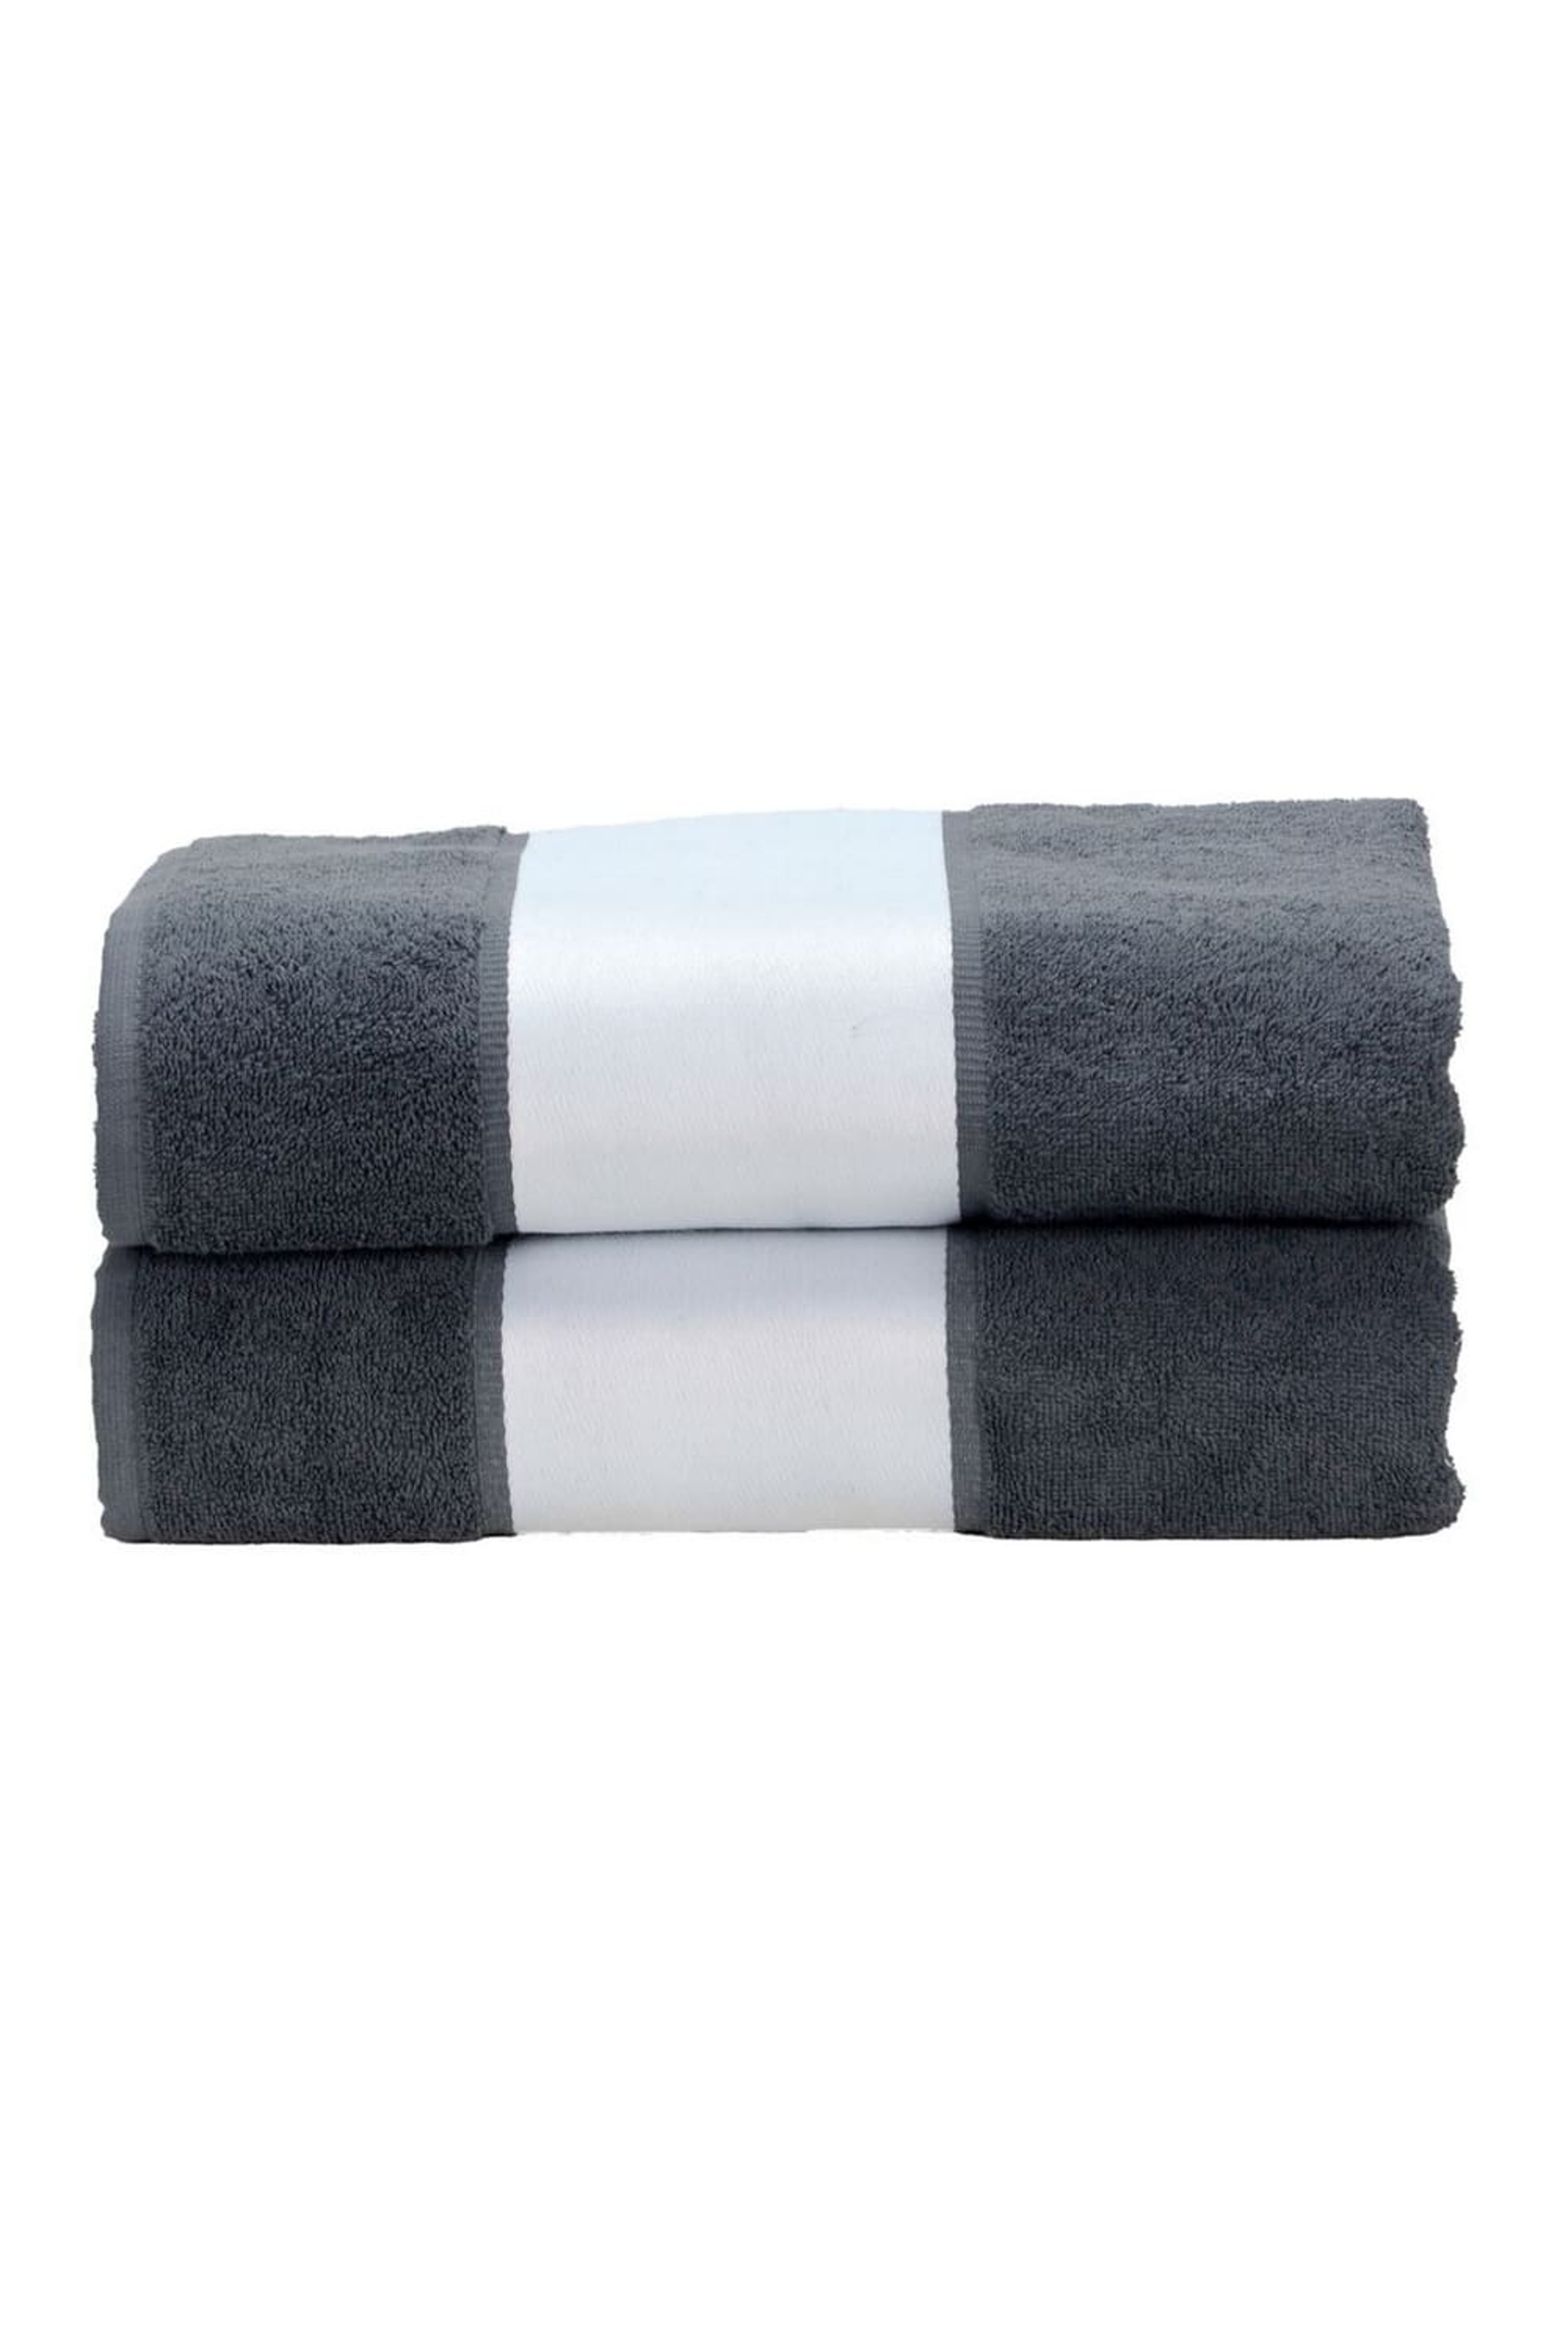 A&R TOWELS A&R TOWELS A&R TOWELS SUBLI-ME BATH TOWEL (GRAPHITE) (ONE SIZE)